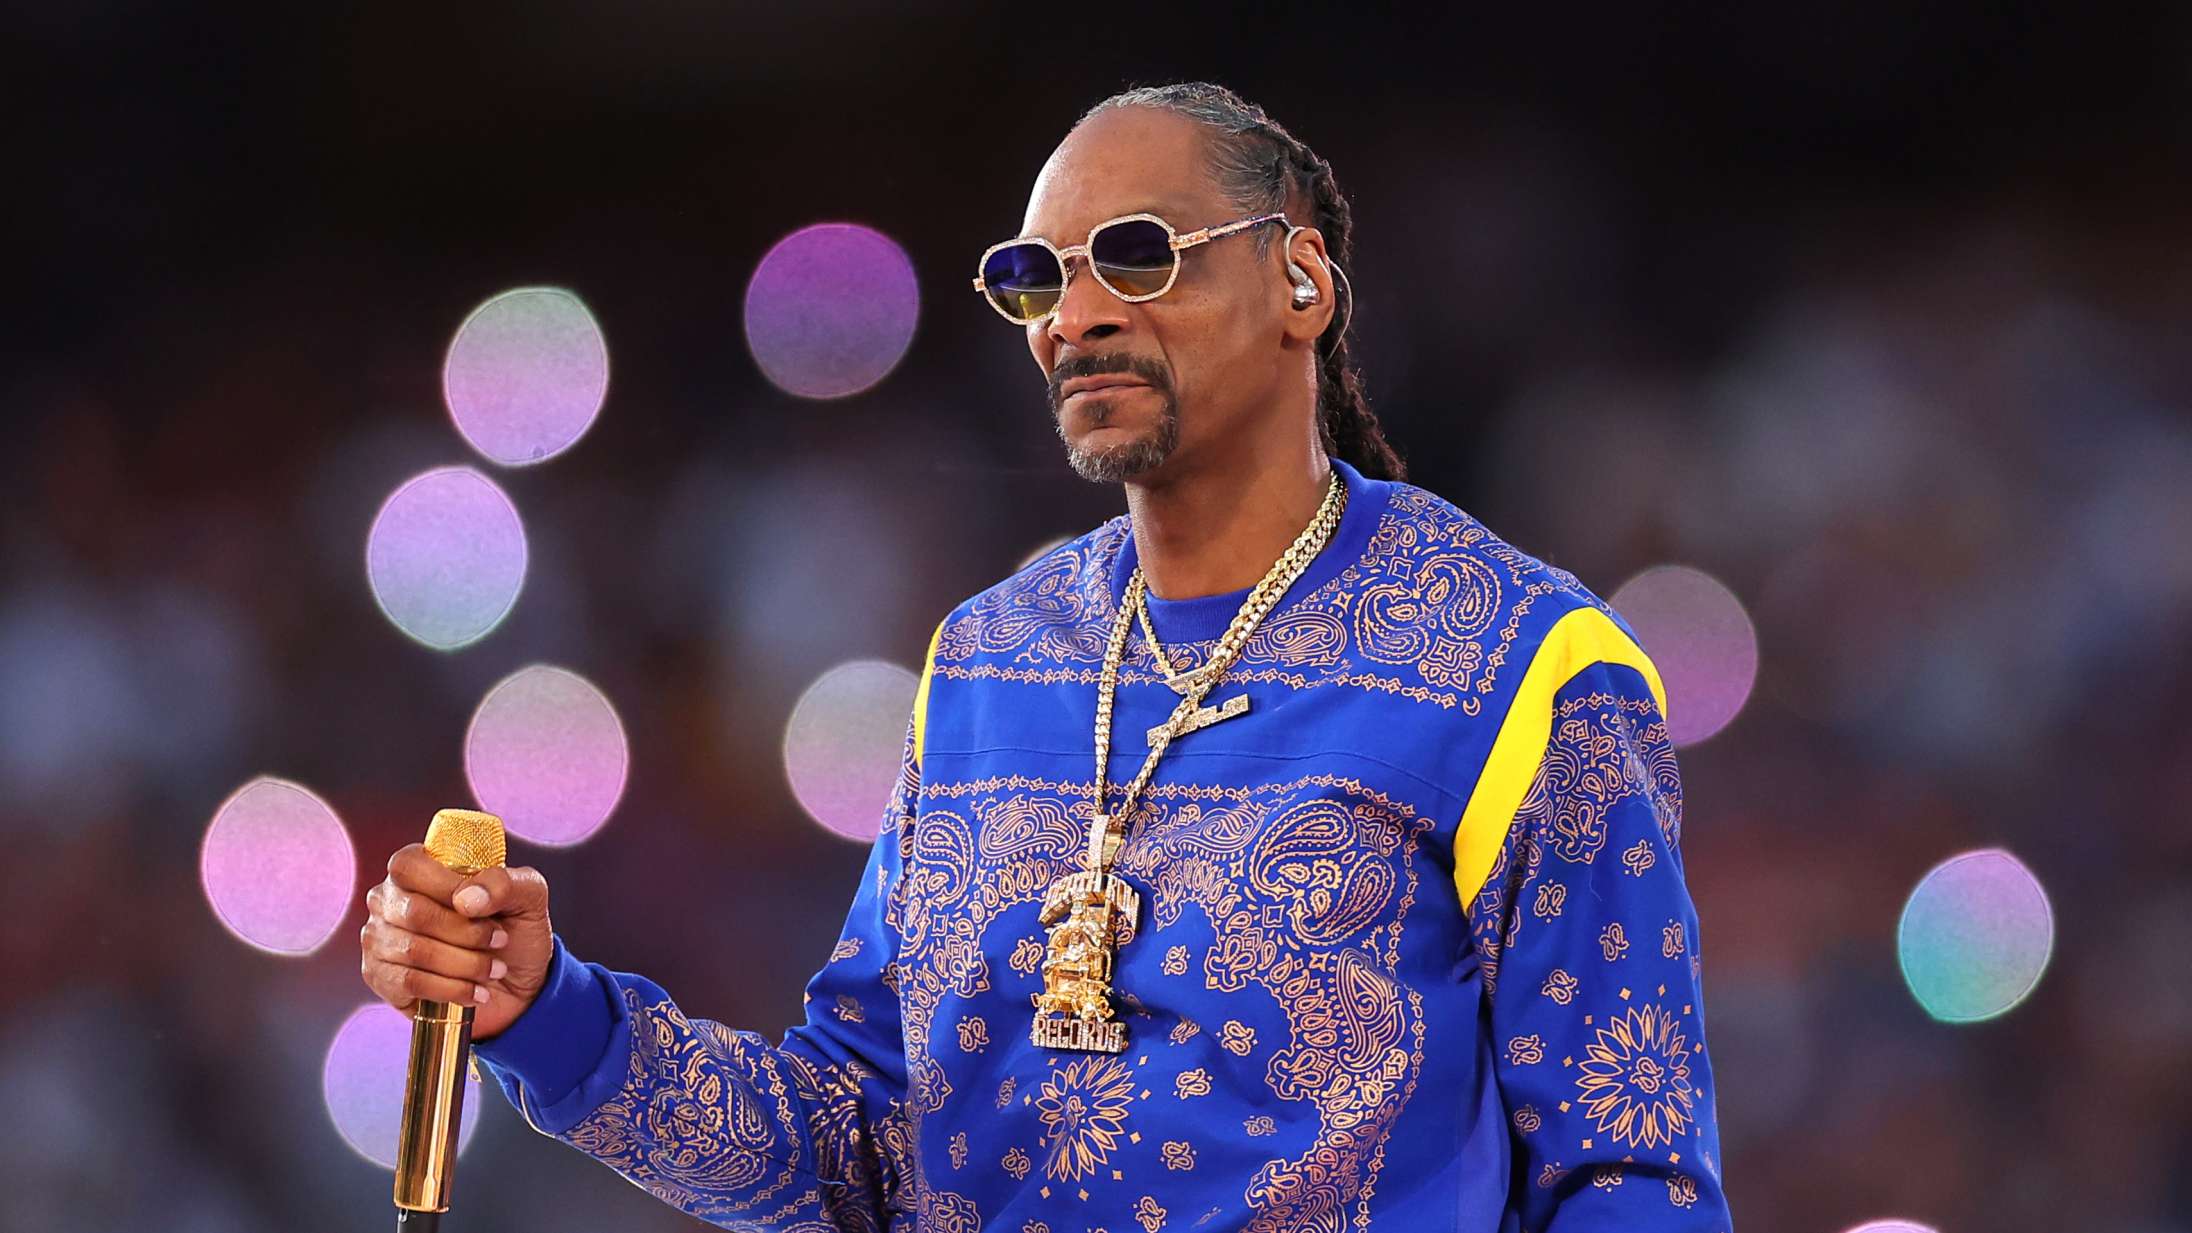 Snoop Dogg melder sig som fremtidig Twitter-direktør